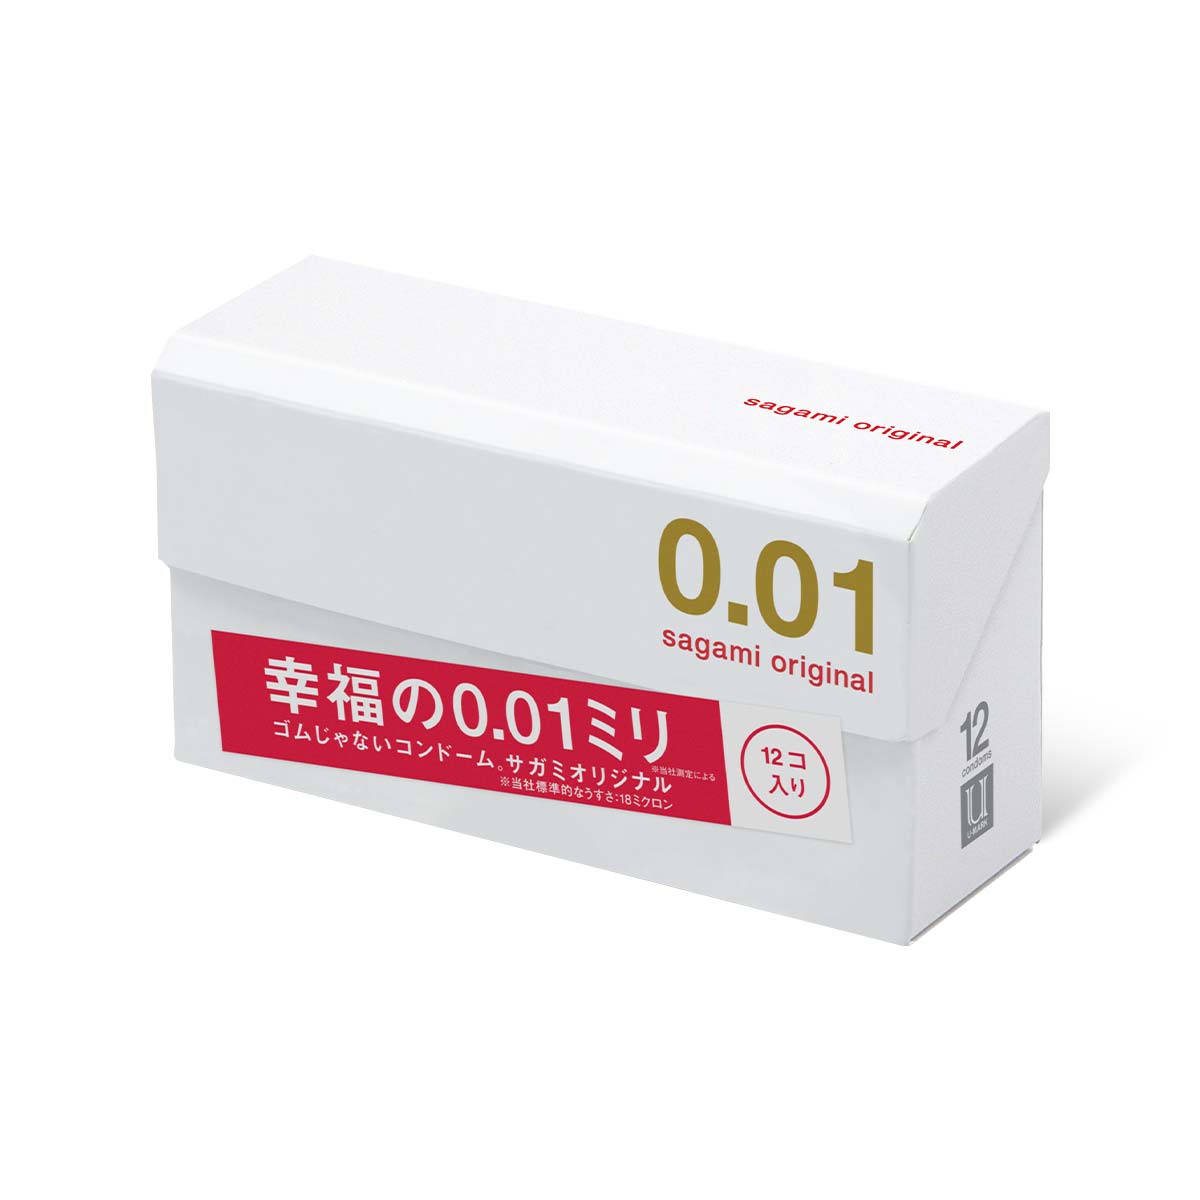 Sagami Original 0.01 12's Pack PU Condom-p_1